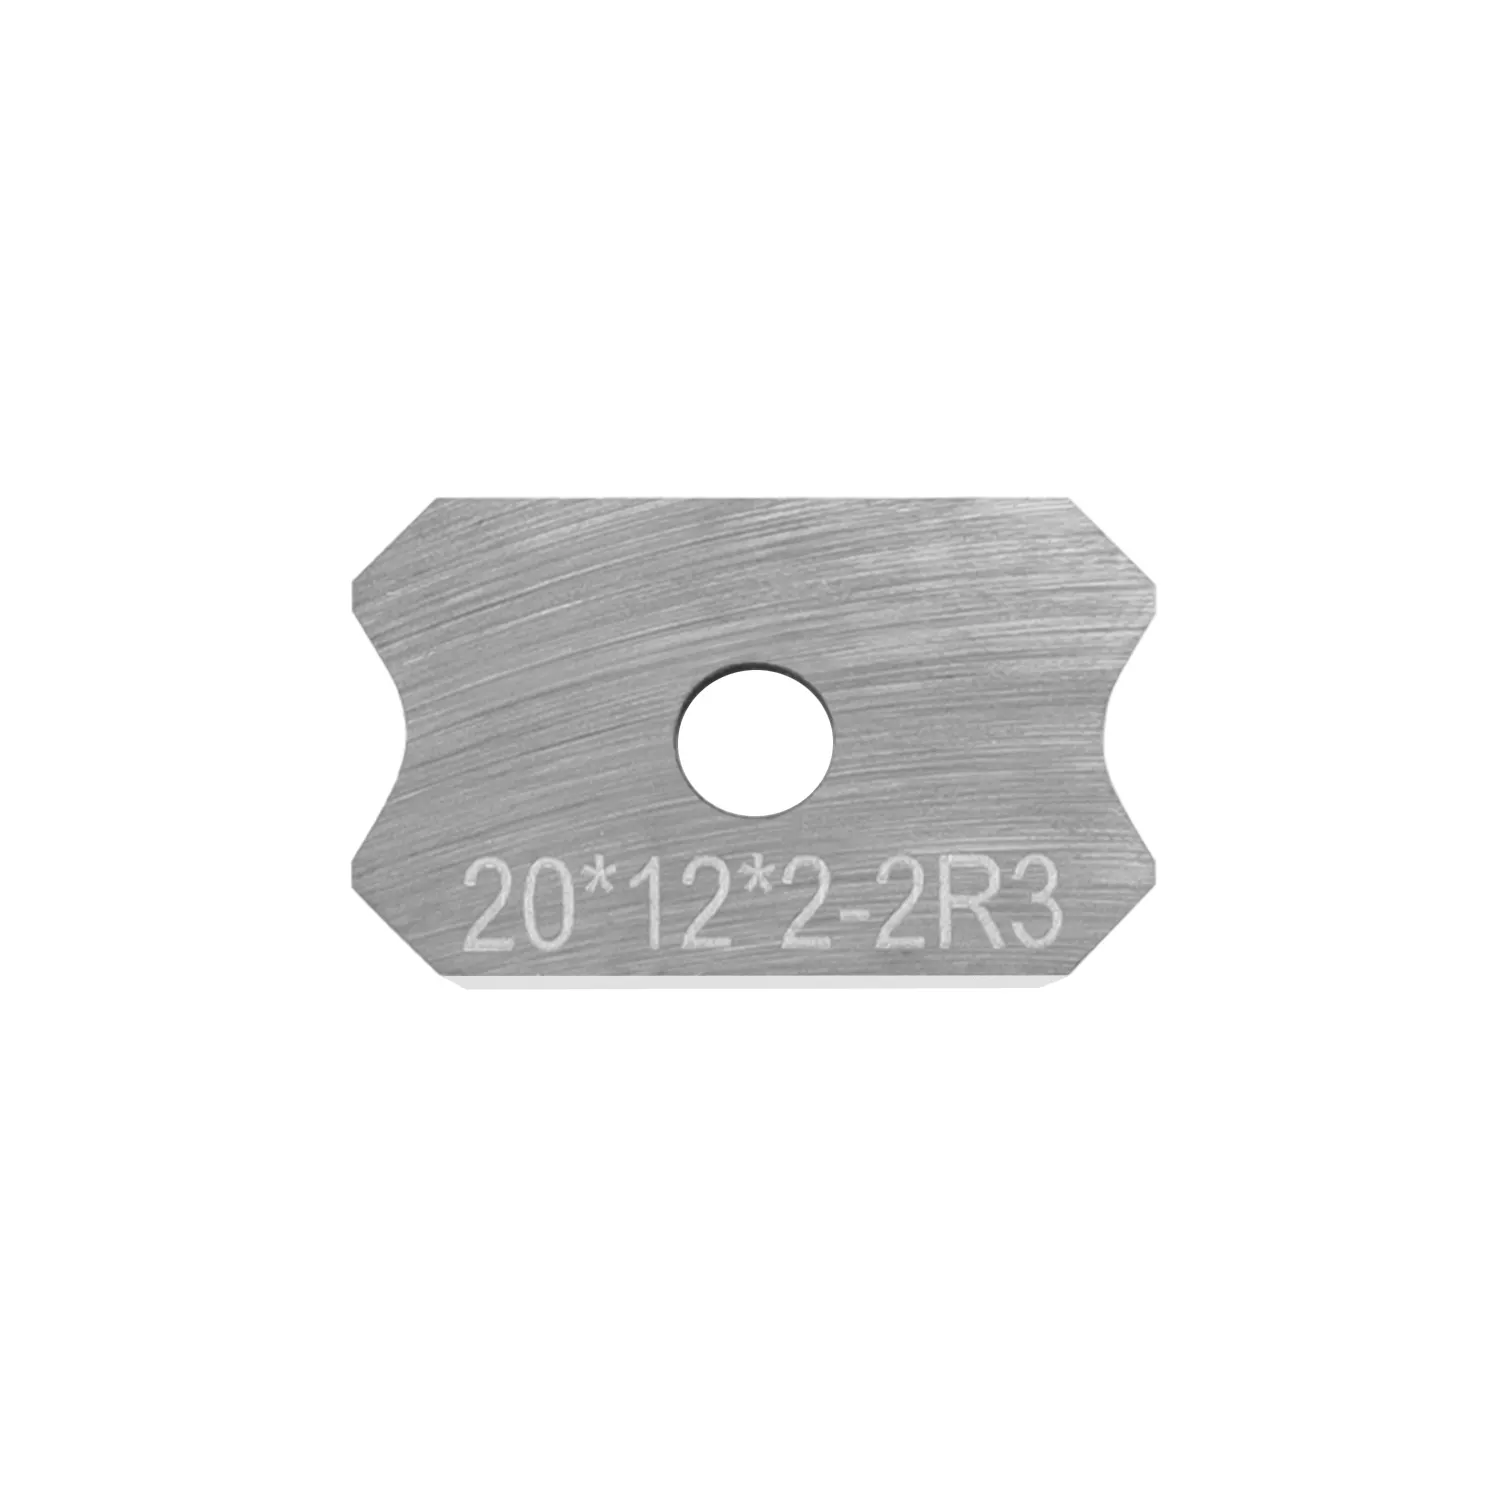 Chế biến gỗ cắt tỉa lưỡi 20x12x2 doanh thu Carbide Cutter đảo ngược bán kính hồ sơ dao cho edgebander gỗ cắt tỉa